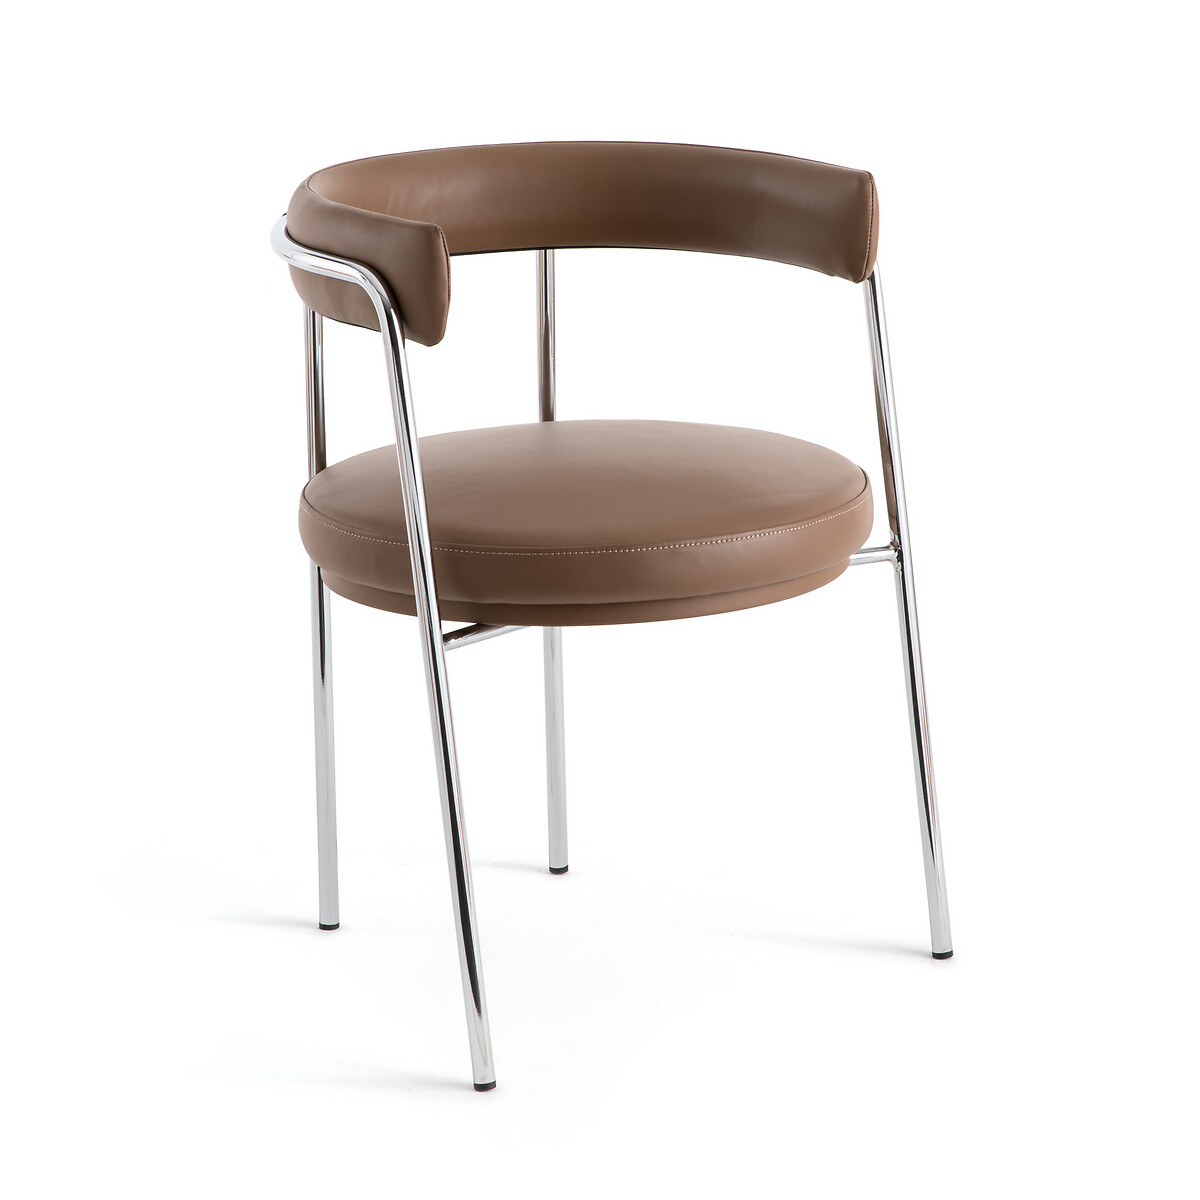 Кресло обеденное кожаное Jubo единый размер каштановый кресло обеденное из двух материалов biface единый размер серый